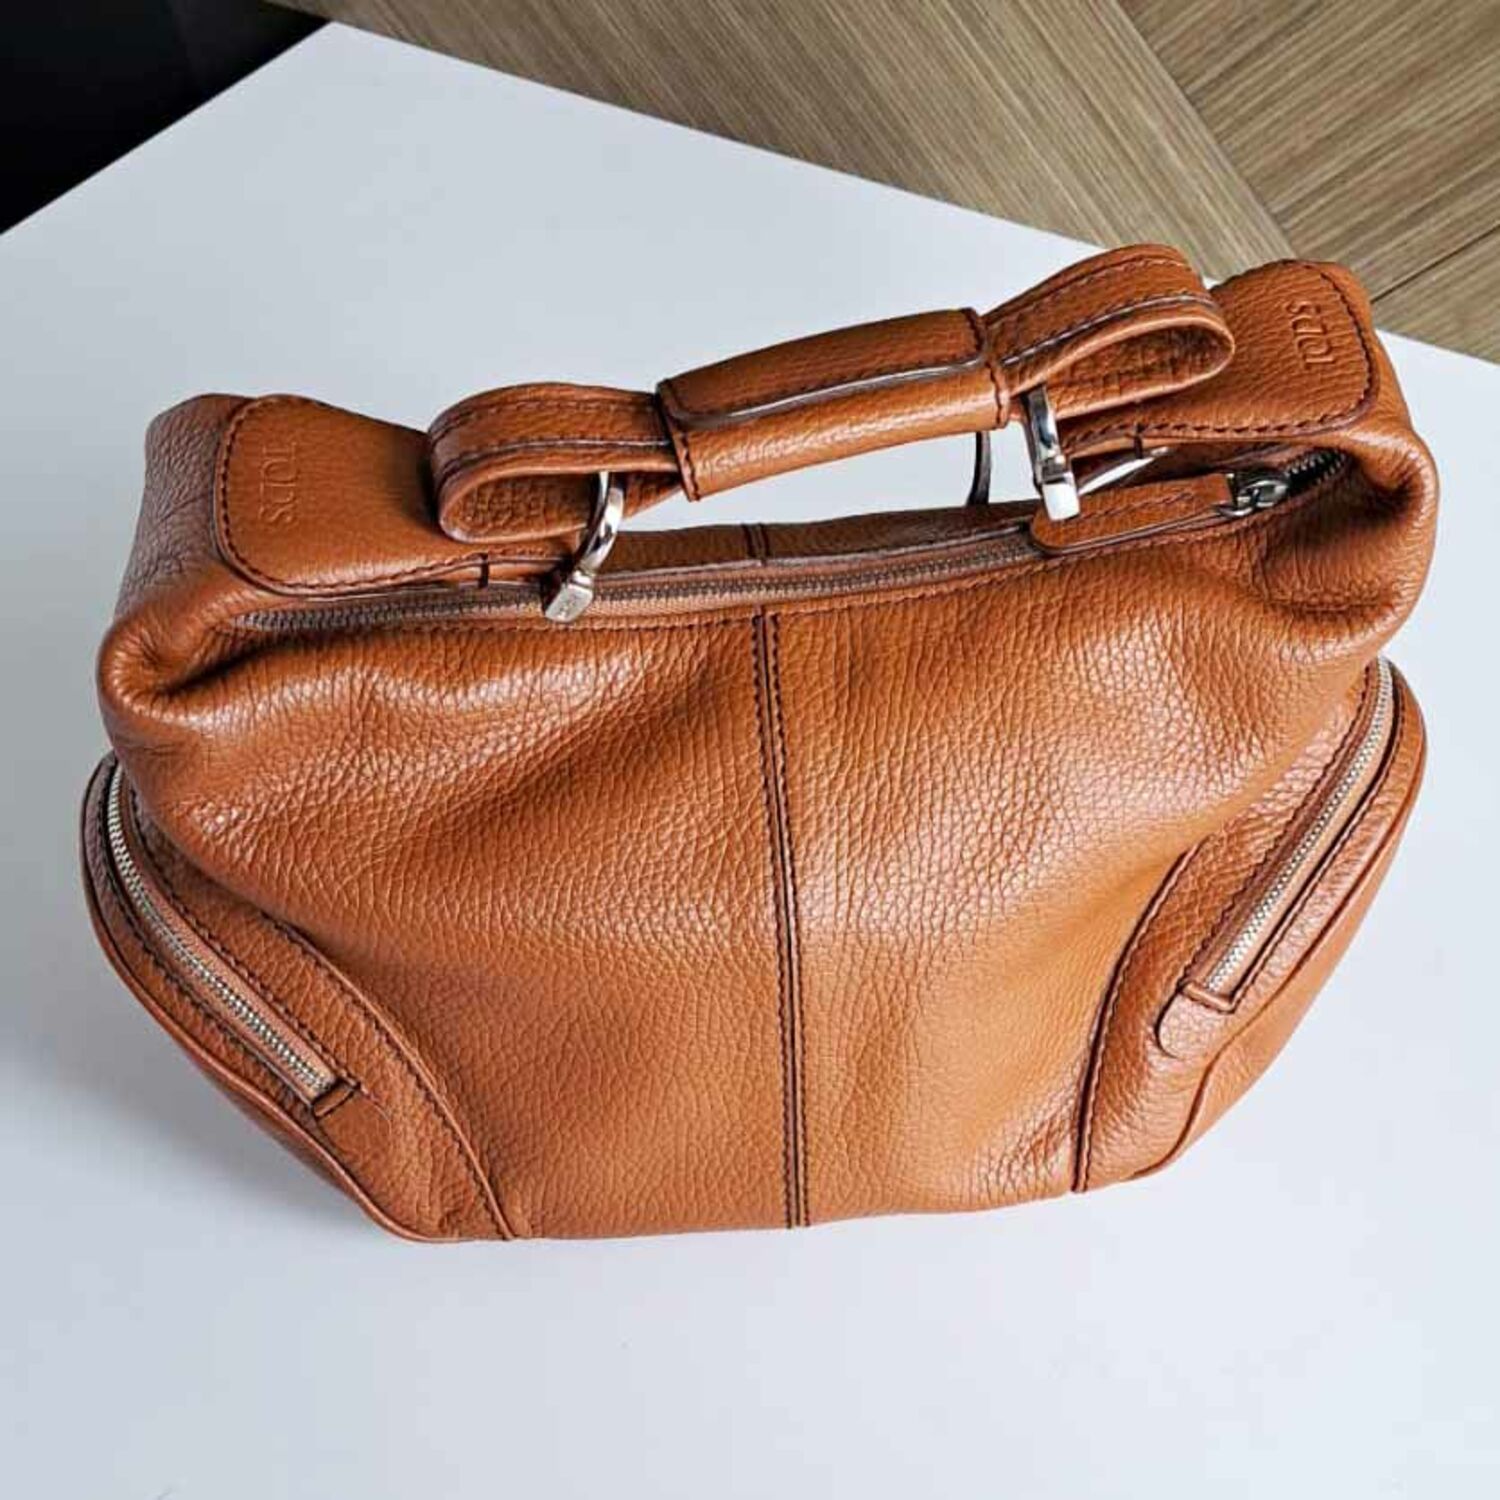 Leather small handbag